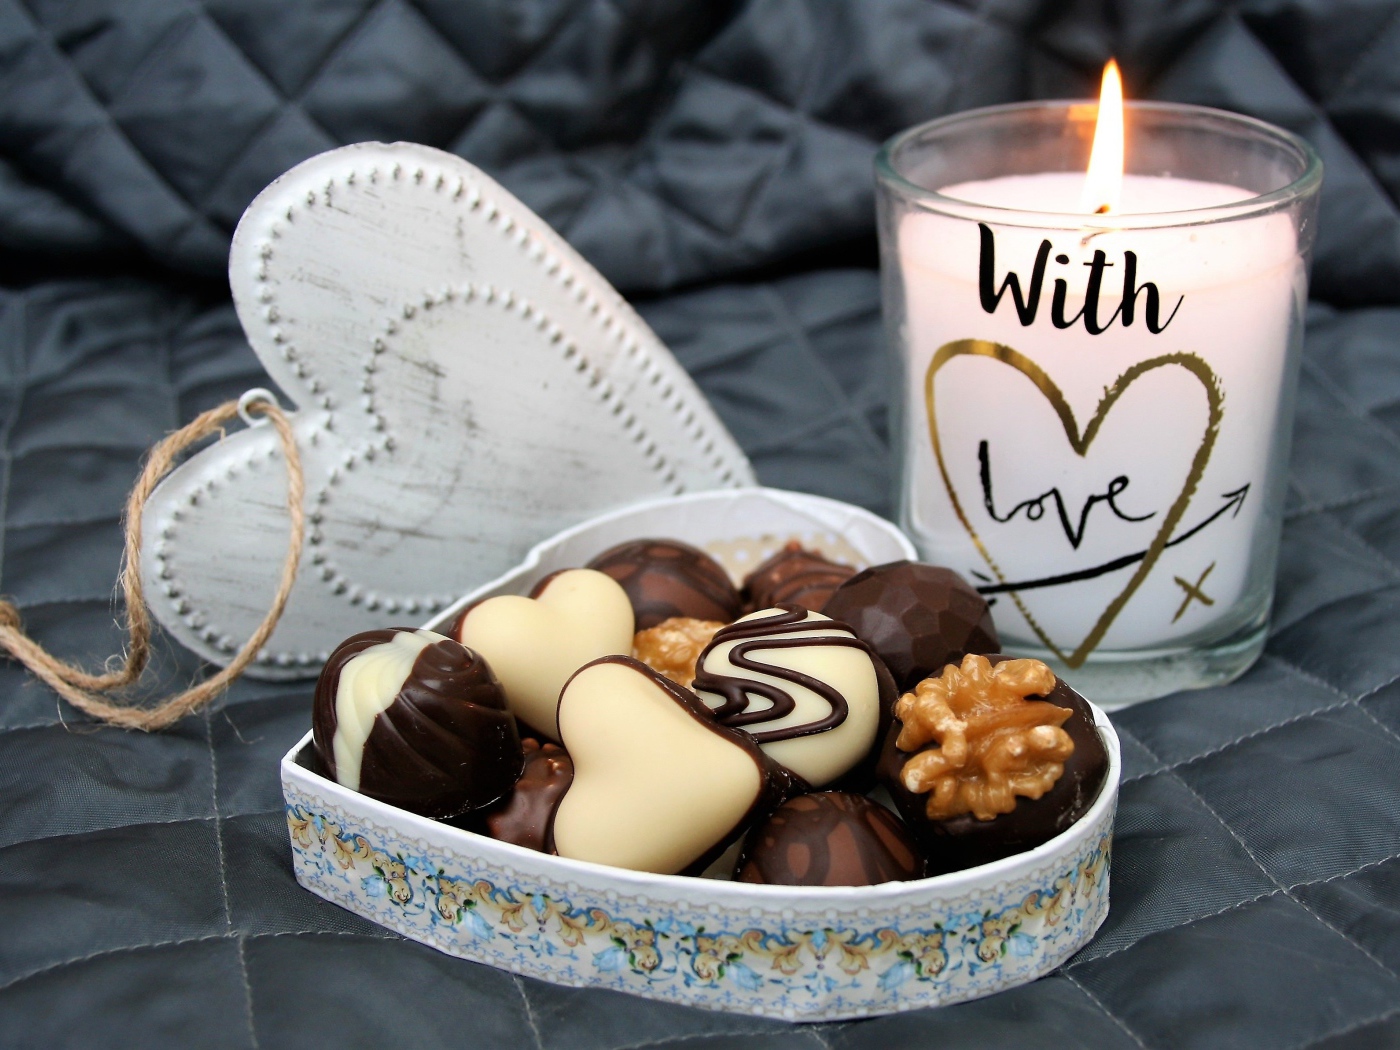 Шоколадные конфеты в коробке в форме сердца на кровати с зажженной свечой 